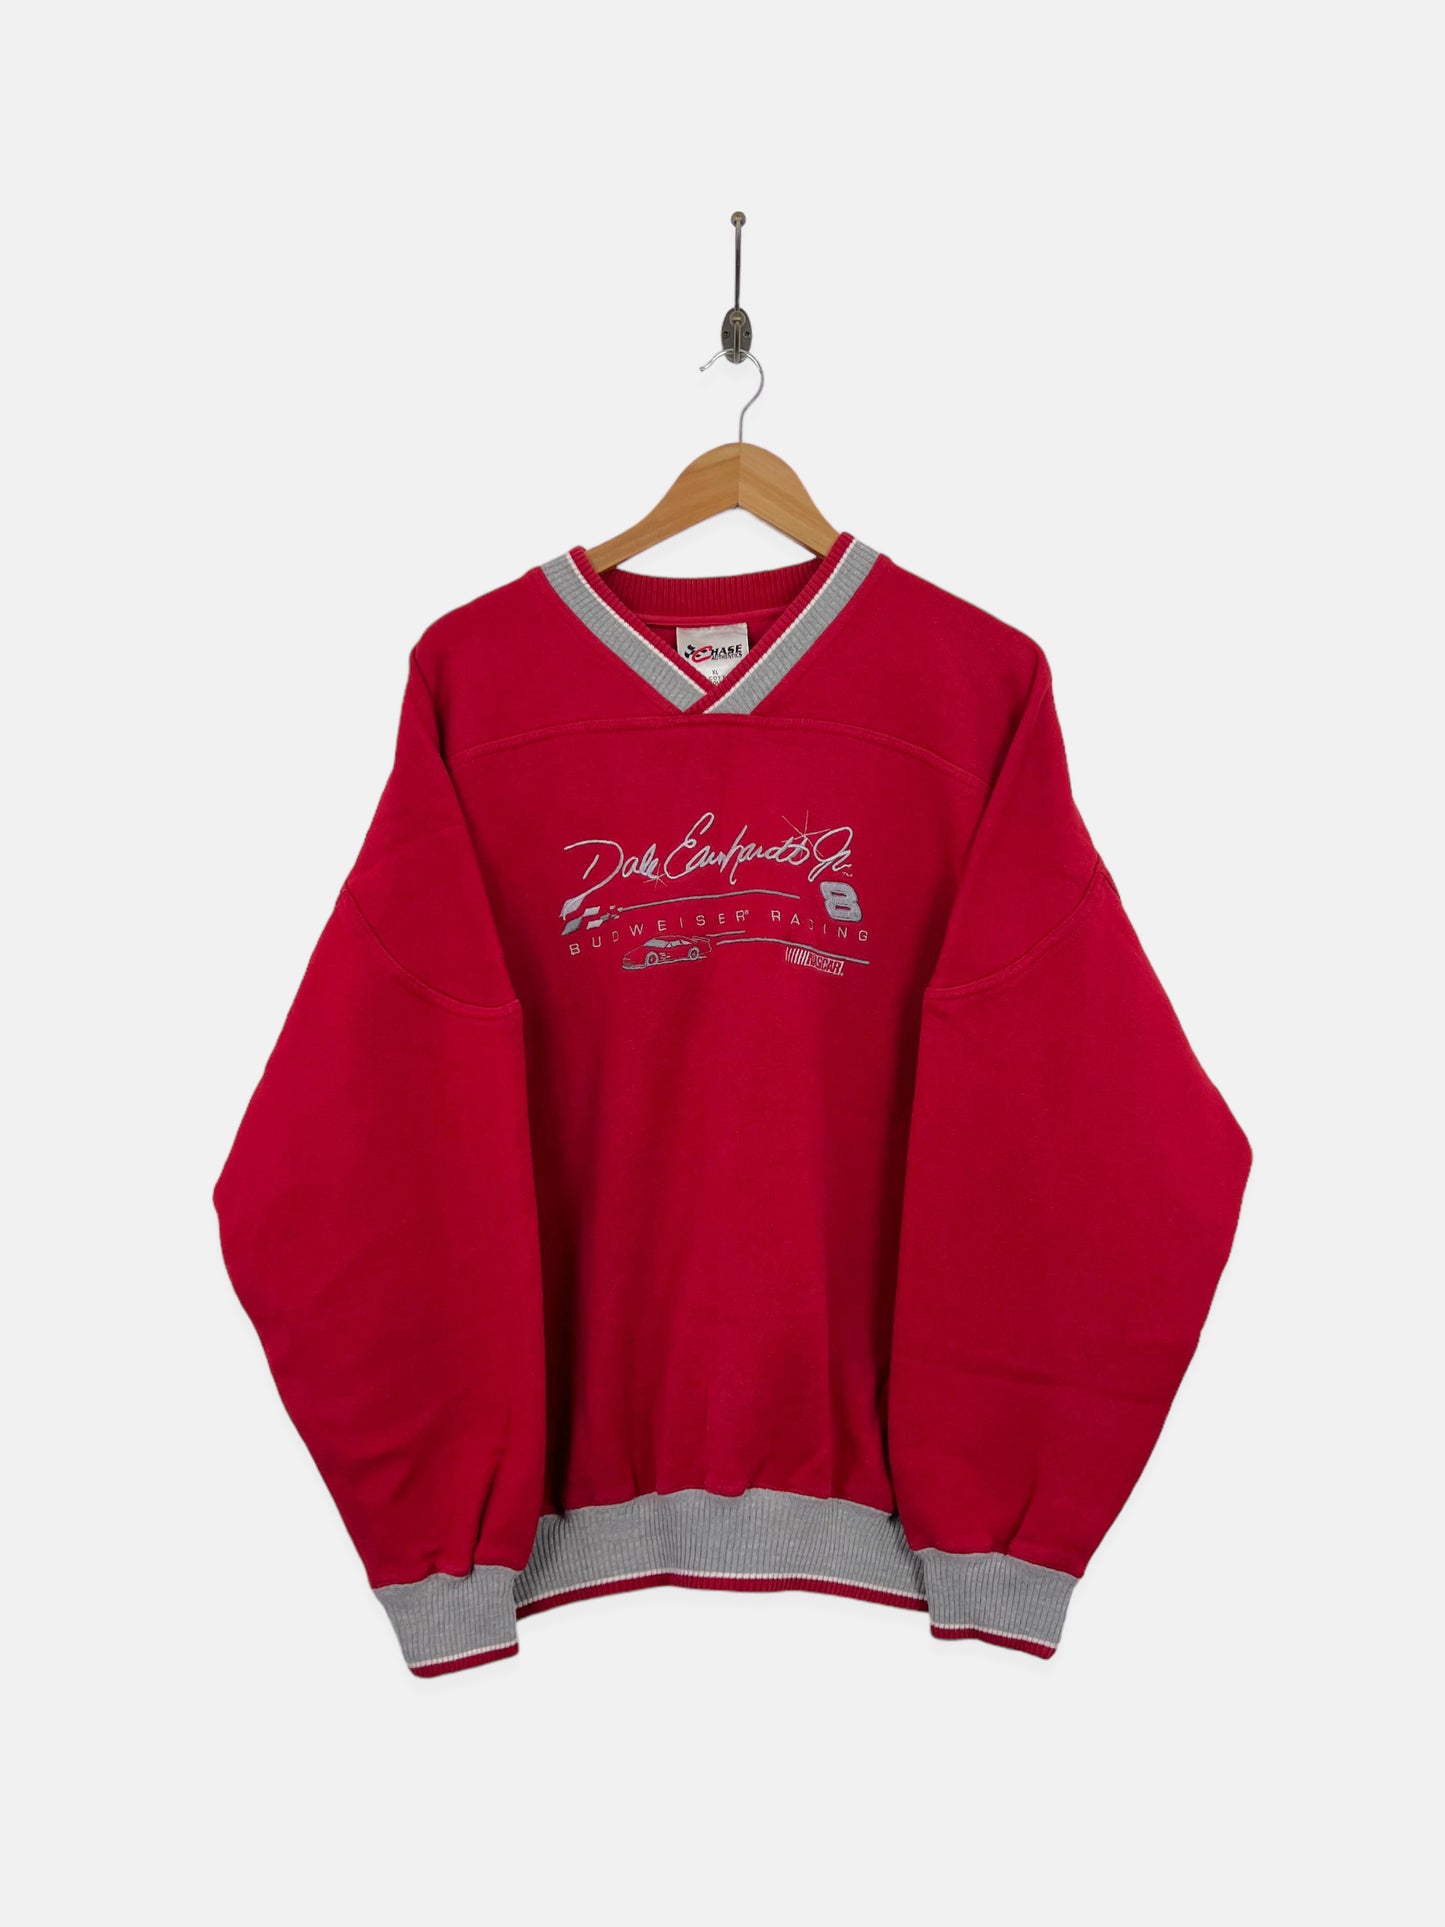 90's NASCAR Dale Earnhardt Jr #8 Embroidered Vintage Sweatshirt Size XL